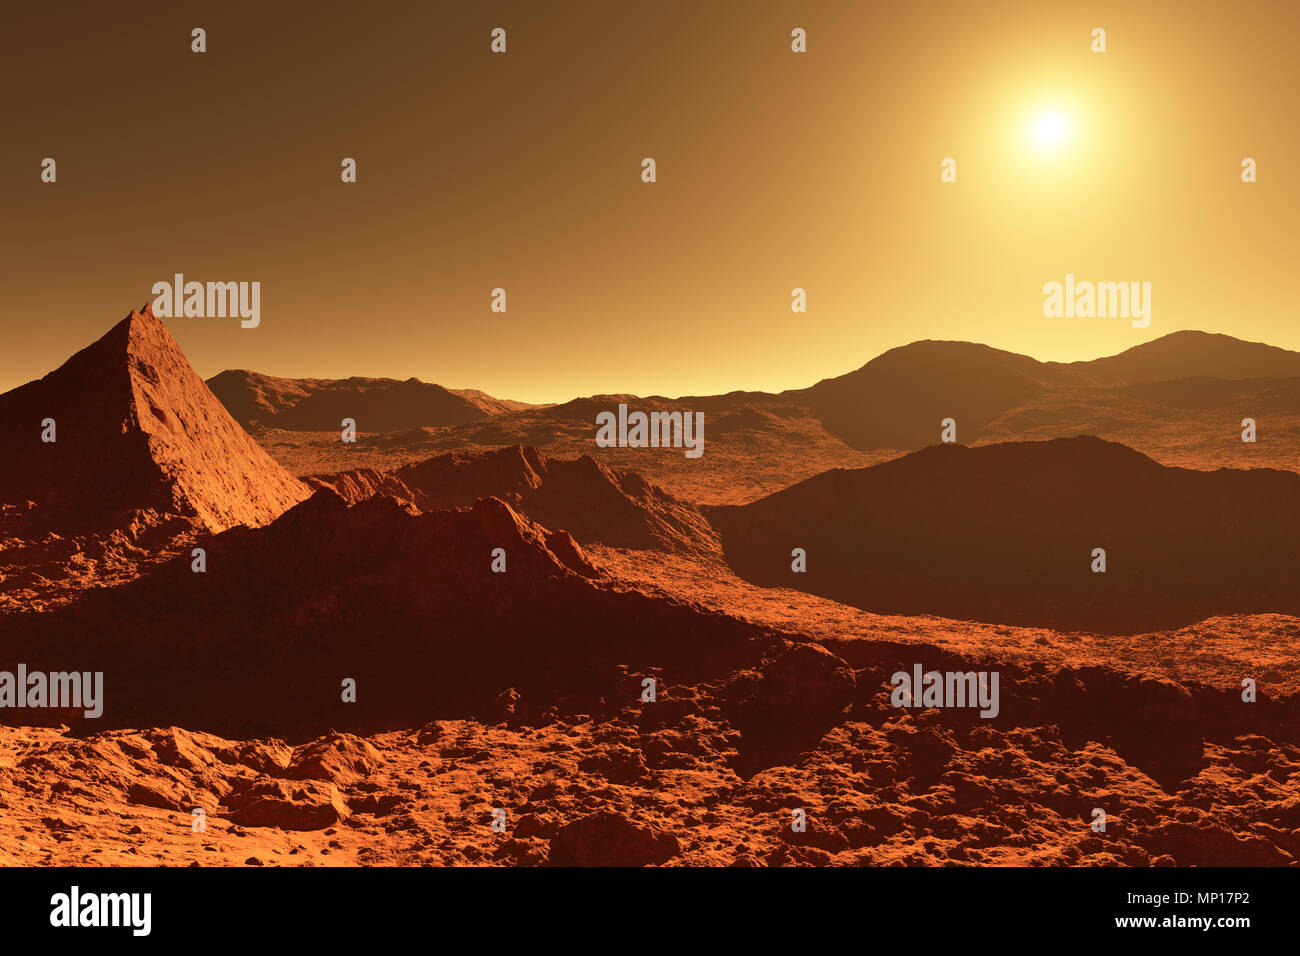 Mars - Red Planet - Landschaft mit riesigen Krater von Auswirkungen und die Berge in der Ferne bei Sonnenaufgang oder Sonnenuntergang - 3D-Darstellung Stockfoto